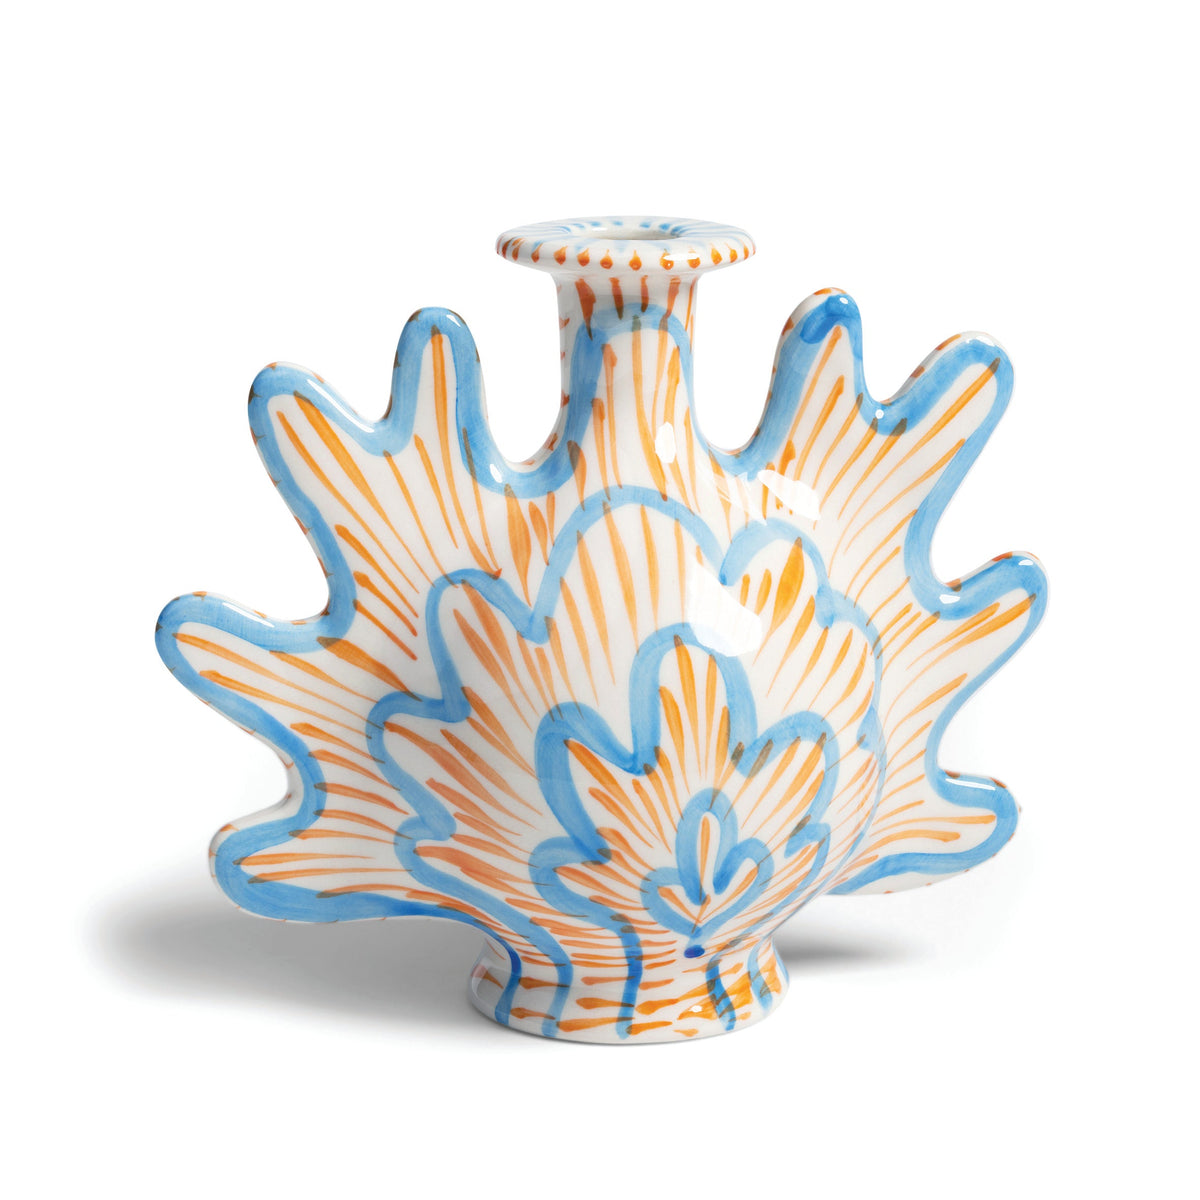 Håndekoreret musling i forårsfarver, som kan  bruges som både vase og lysestage · Niedziella & Friends (7948726010084)